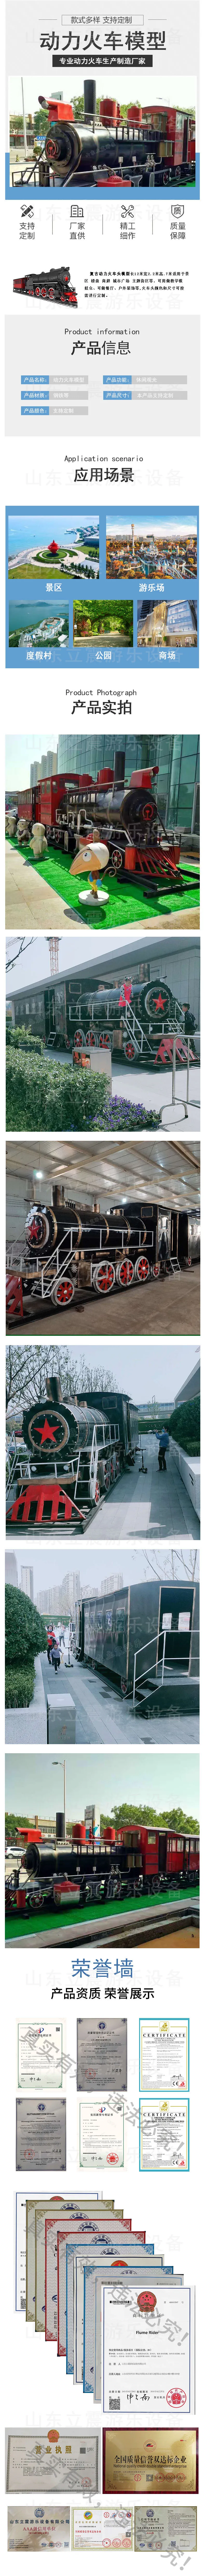 大型火车模型租赁复古火车头模型老式火车头模型火车模型生产厂家